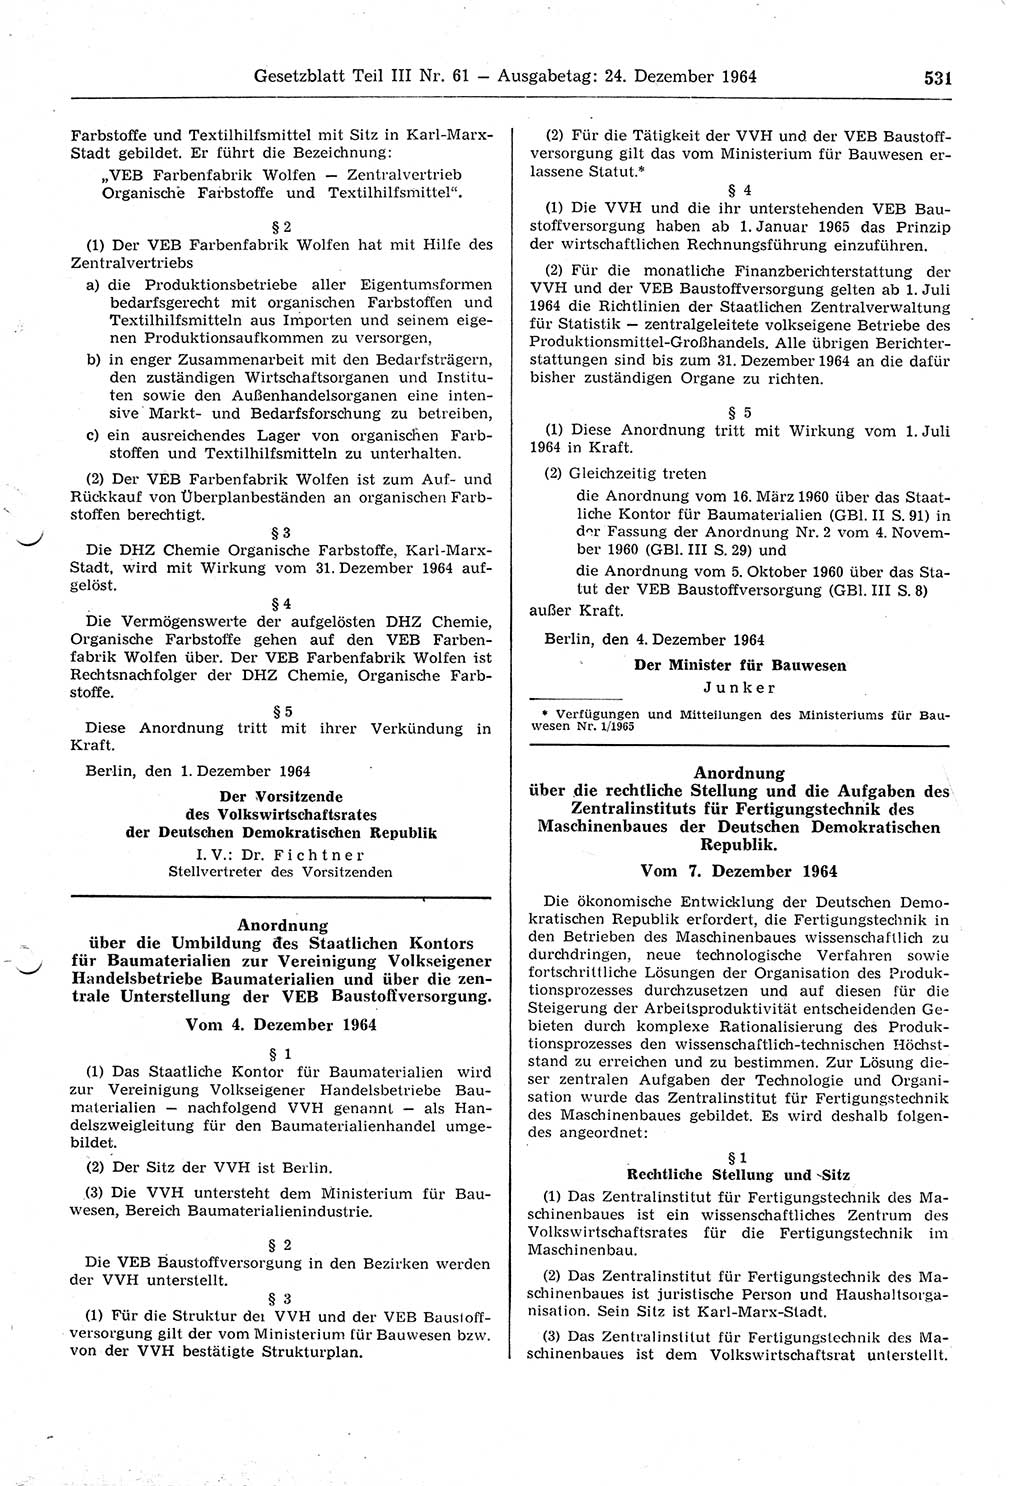 Gesetzblatt (GBl.) der Deutschen Demokratischen Republik (DDR) Teil ⅠⅠⅠ 1964, Seite 531 (GBl. DDR ⅠⅠⅠ 1964, S. 531)